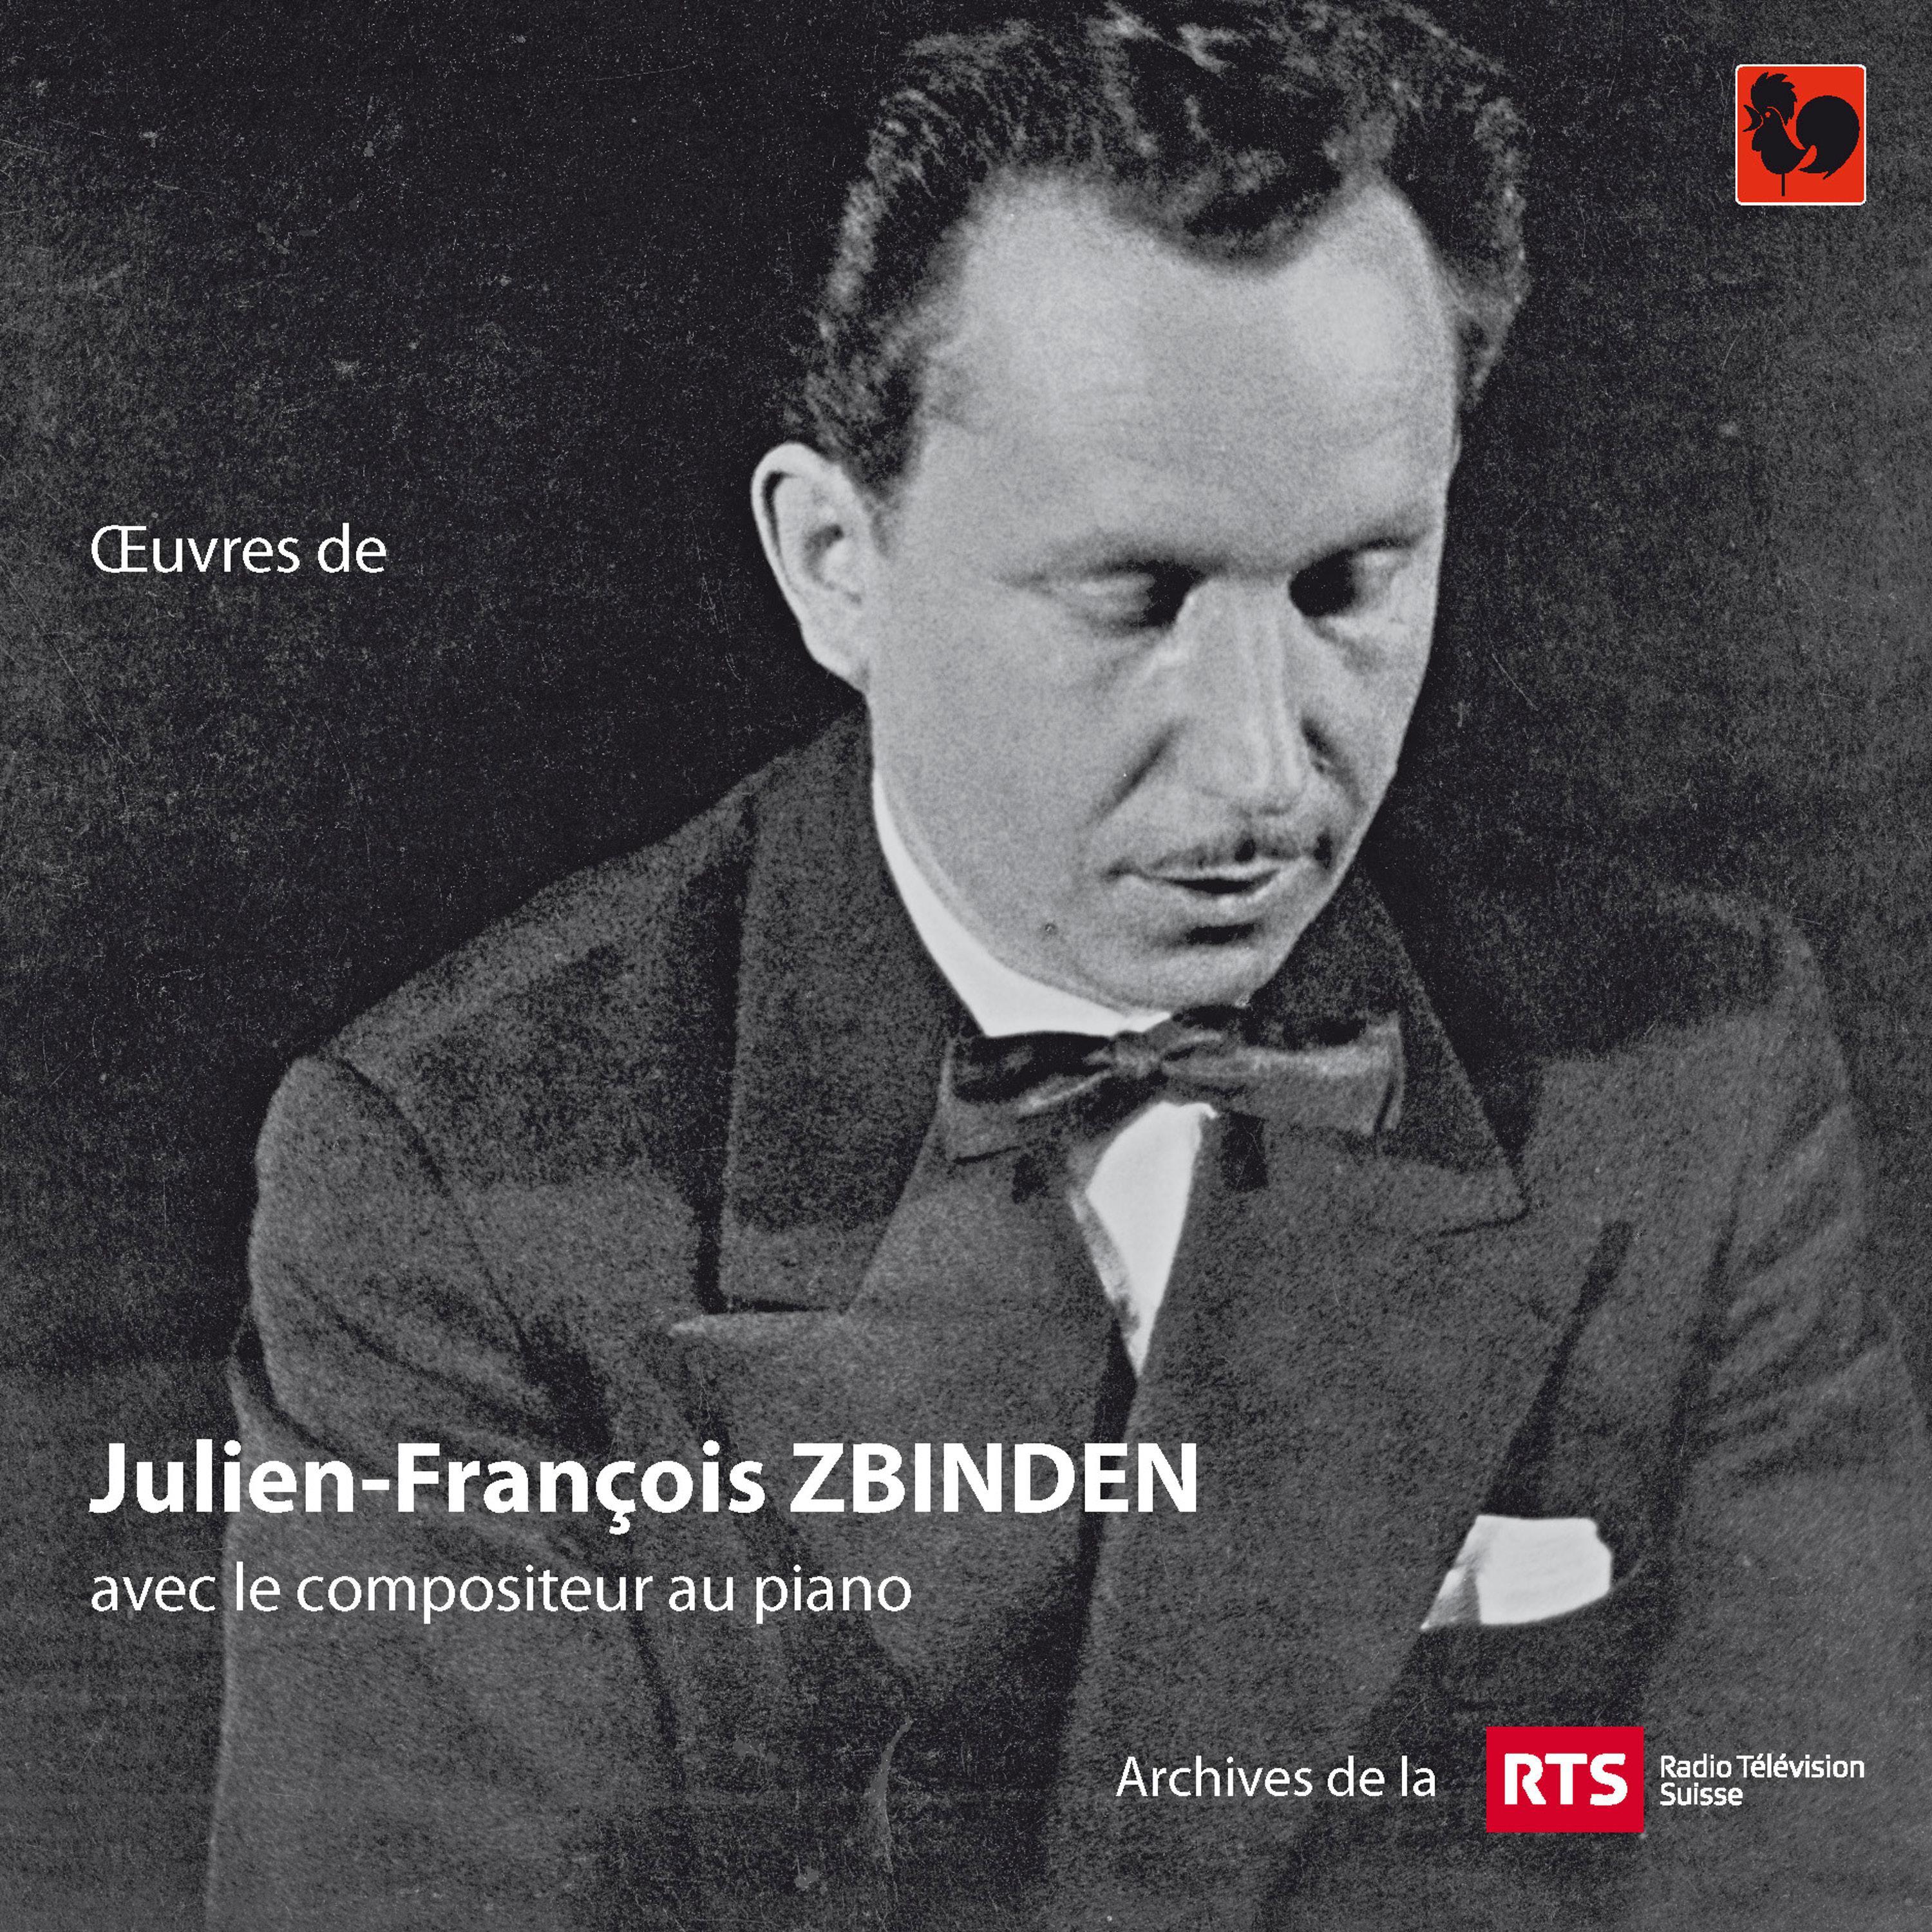 Julien-François Zbinden - Jazzific 59-16 pour jazz group et orchestre à cordes, Op. 28: III. Allegro: Beats for Armstrong